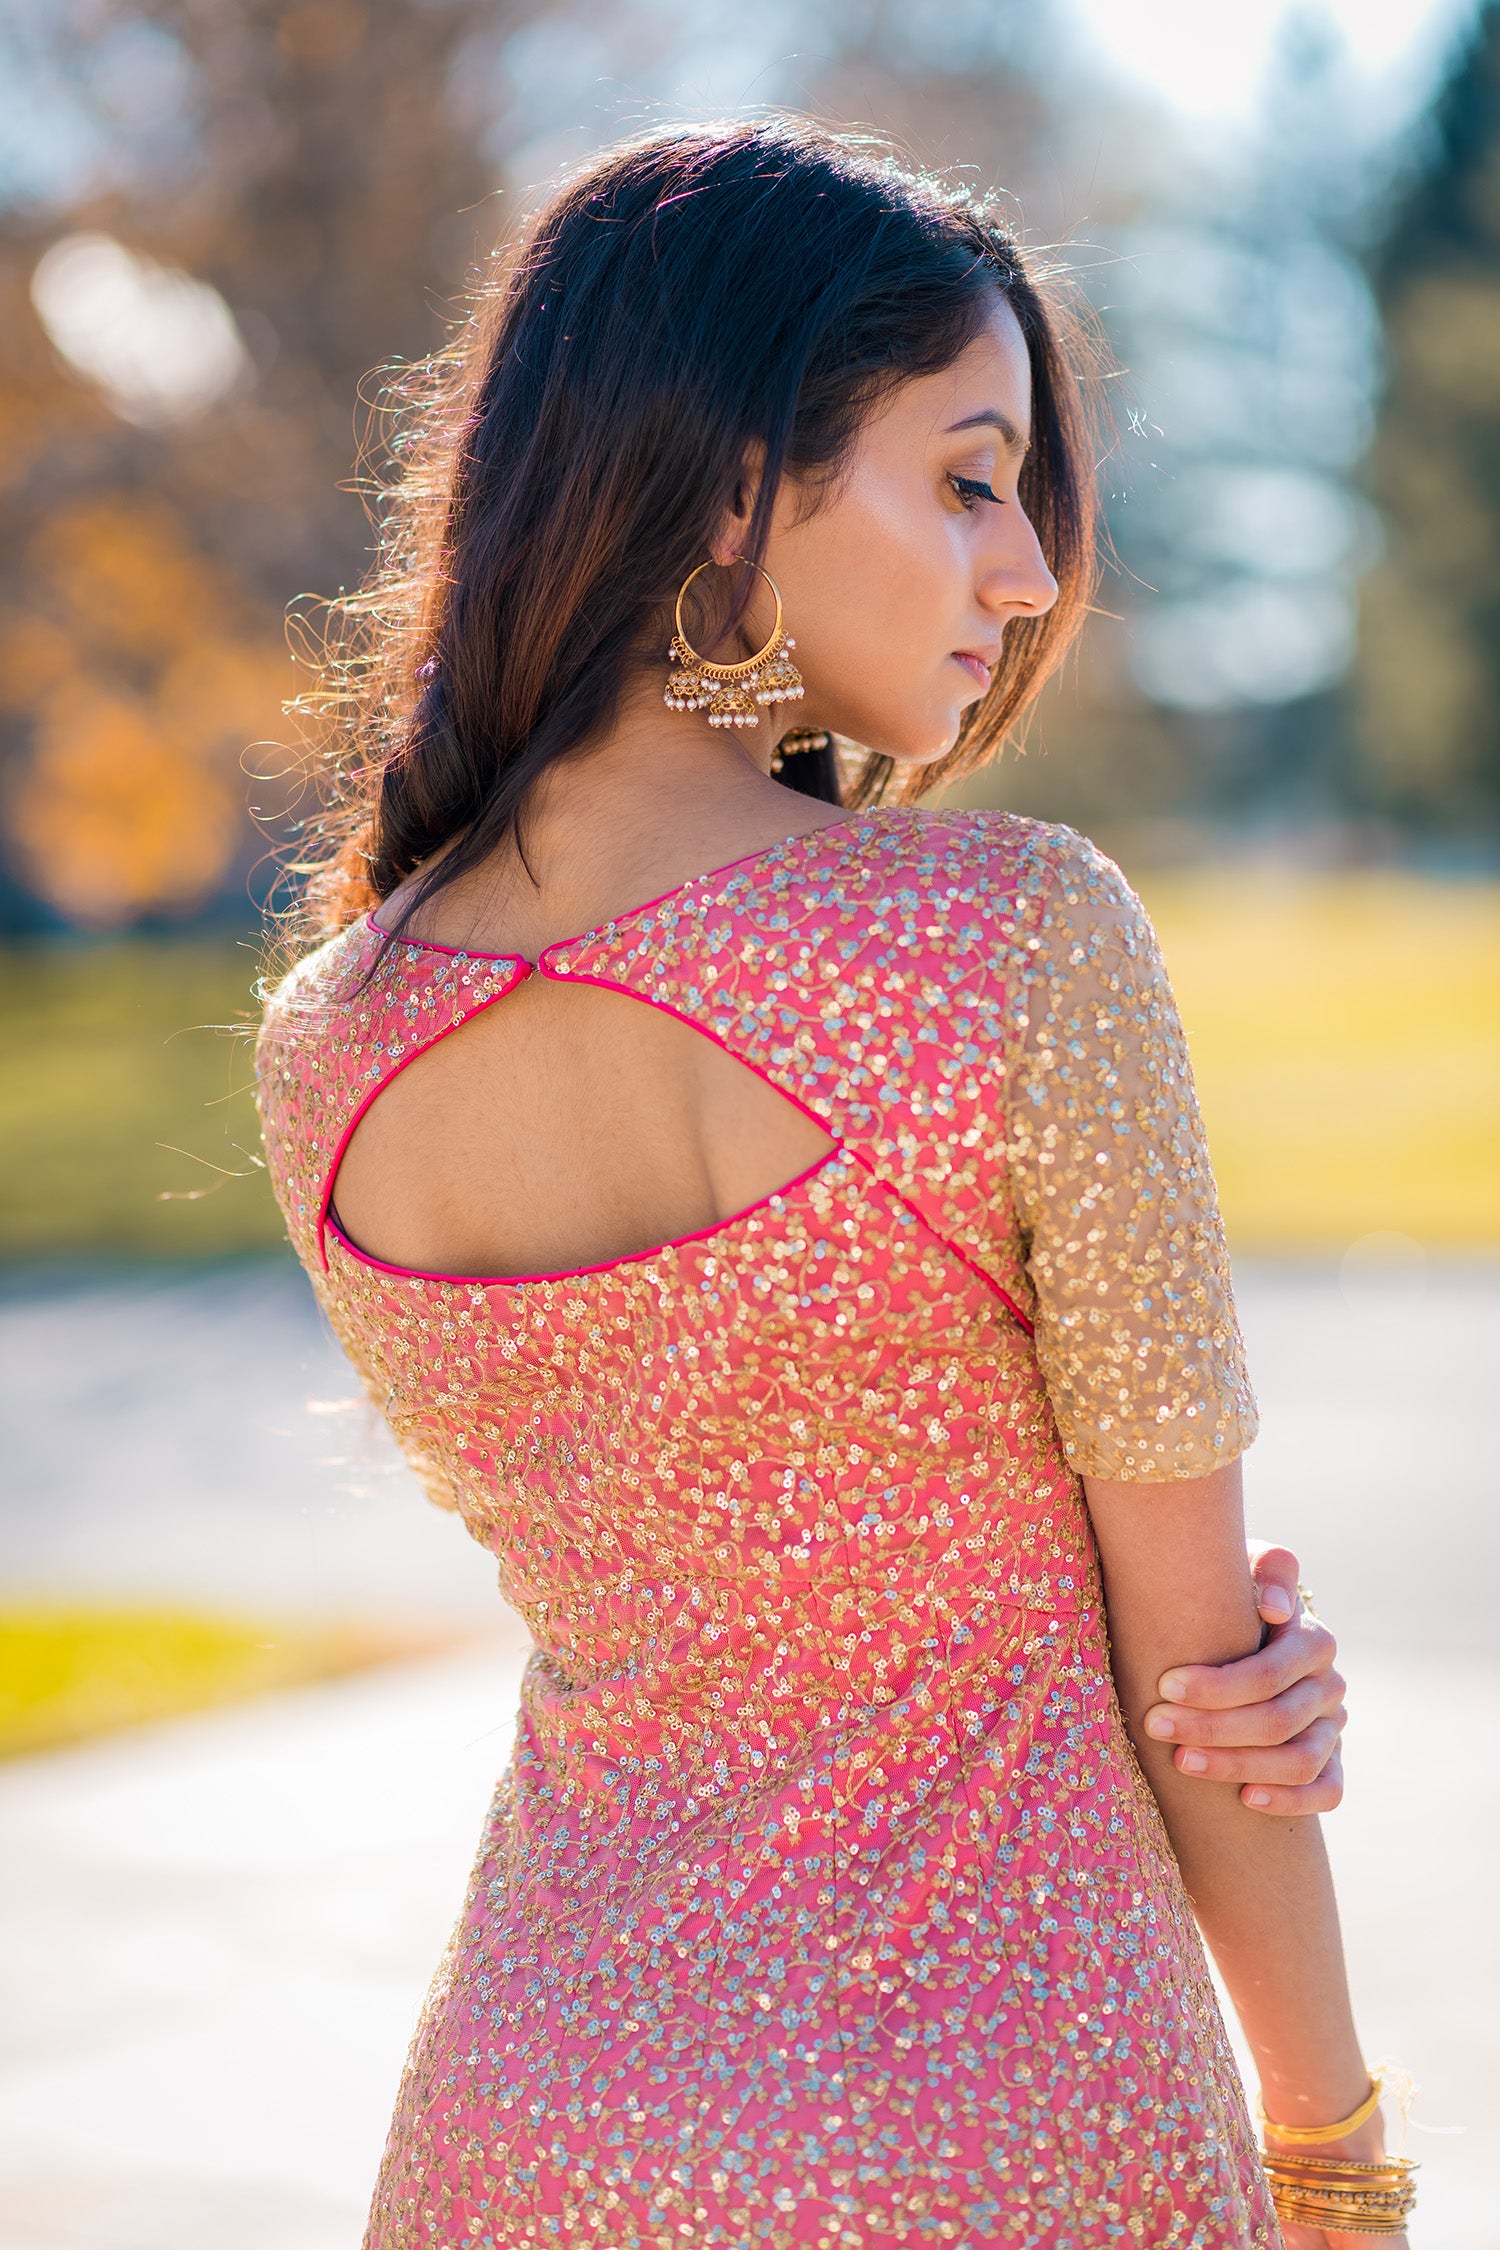 Brunette Woman in Anarkali Dress · Free Stock Photo